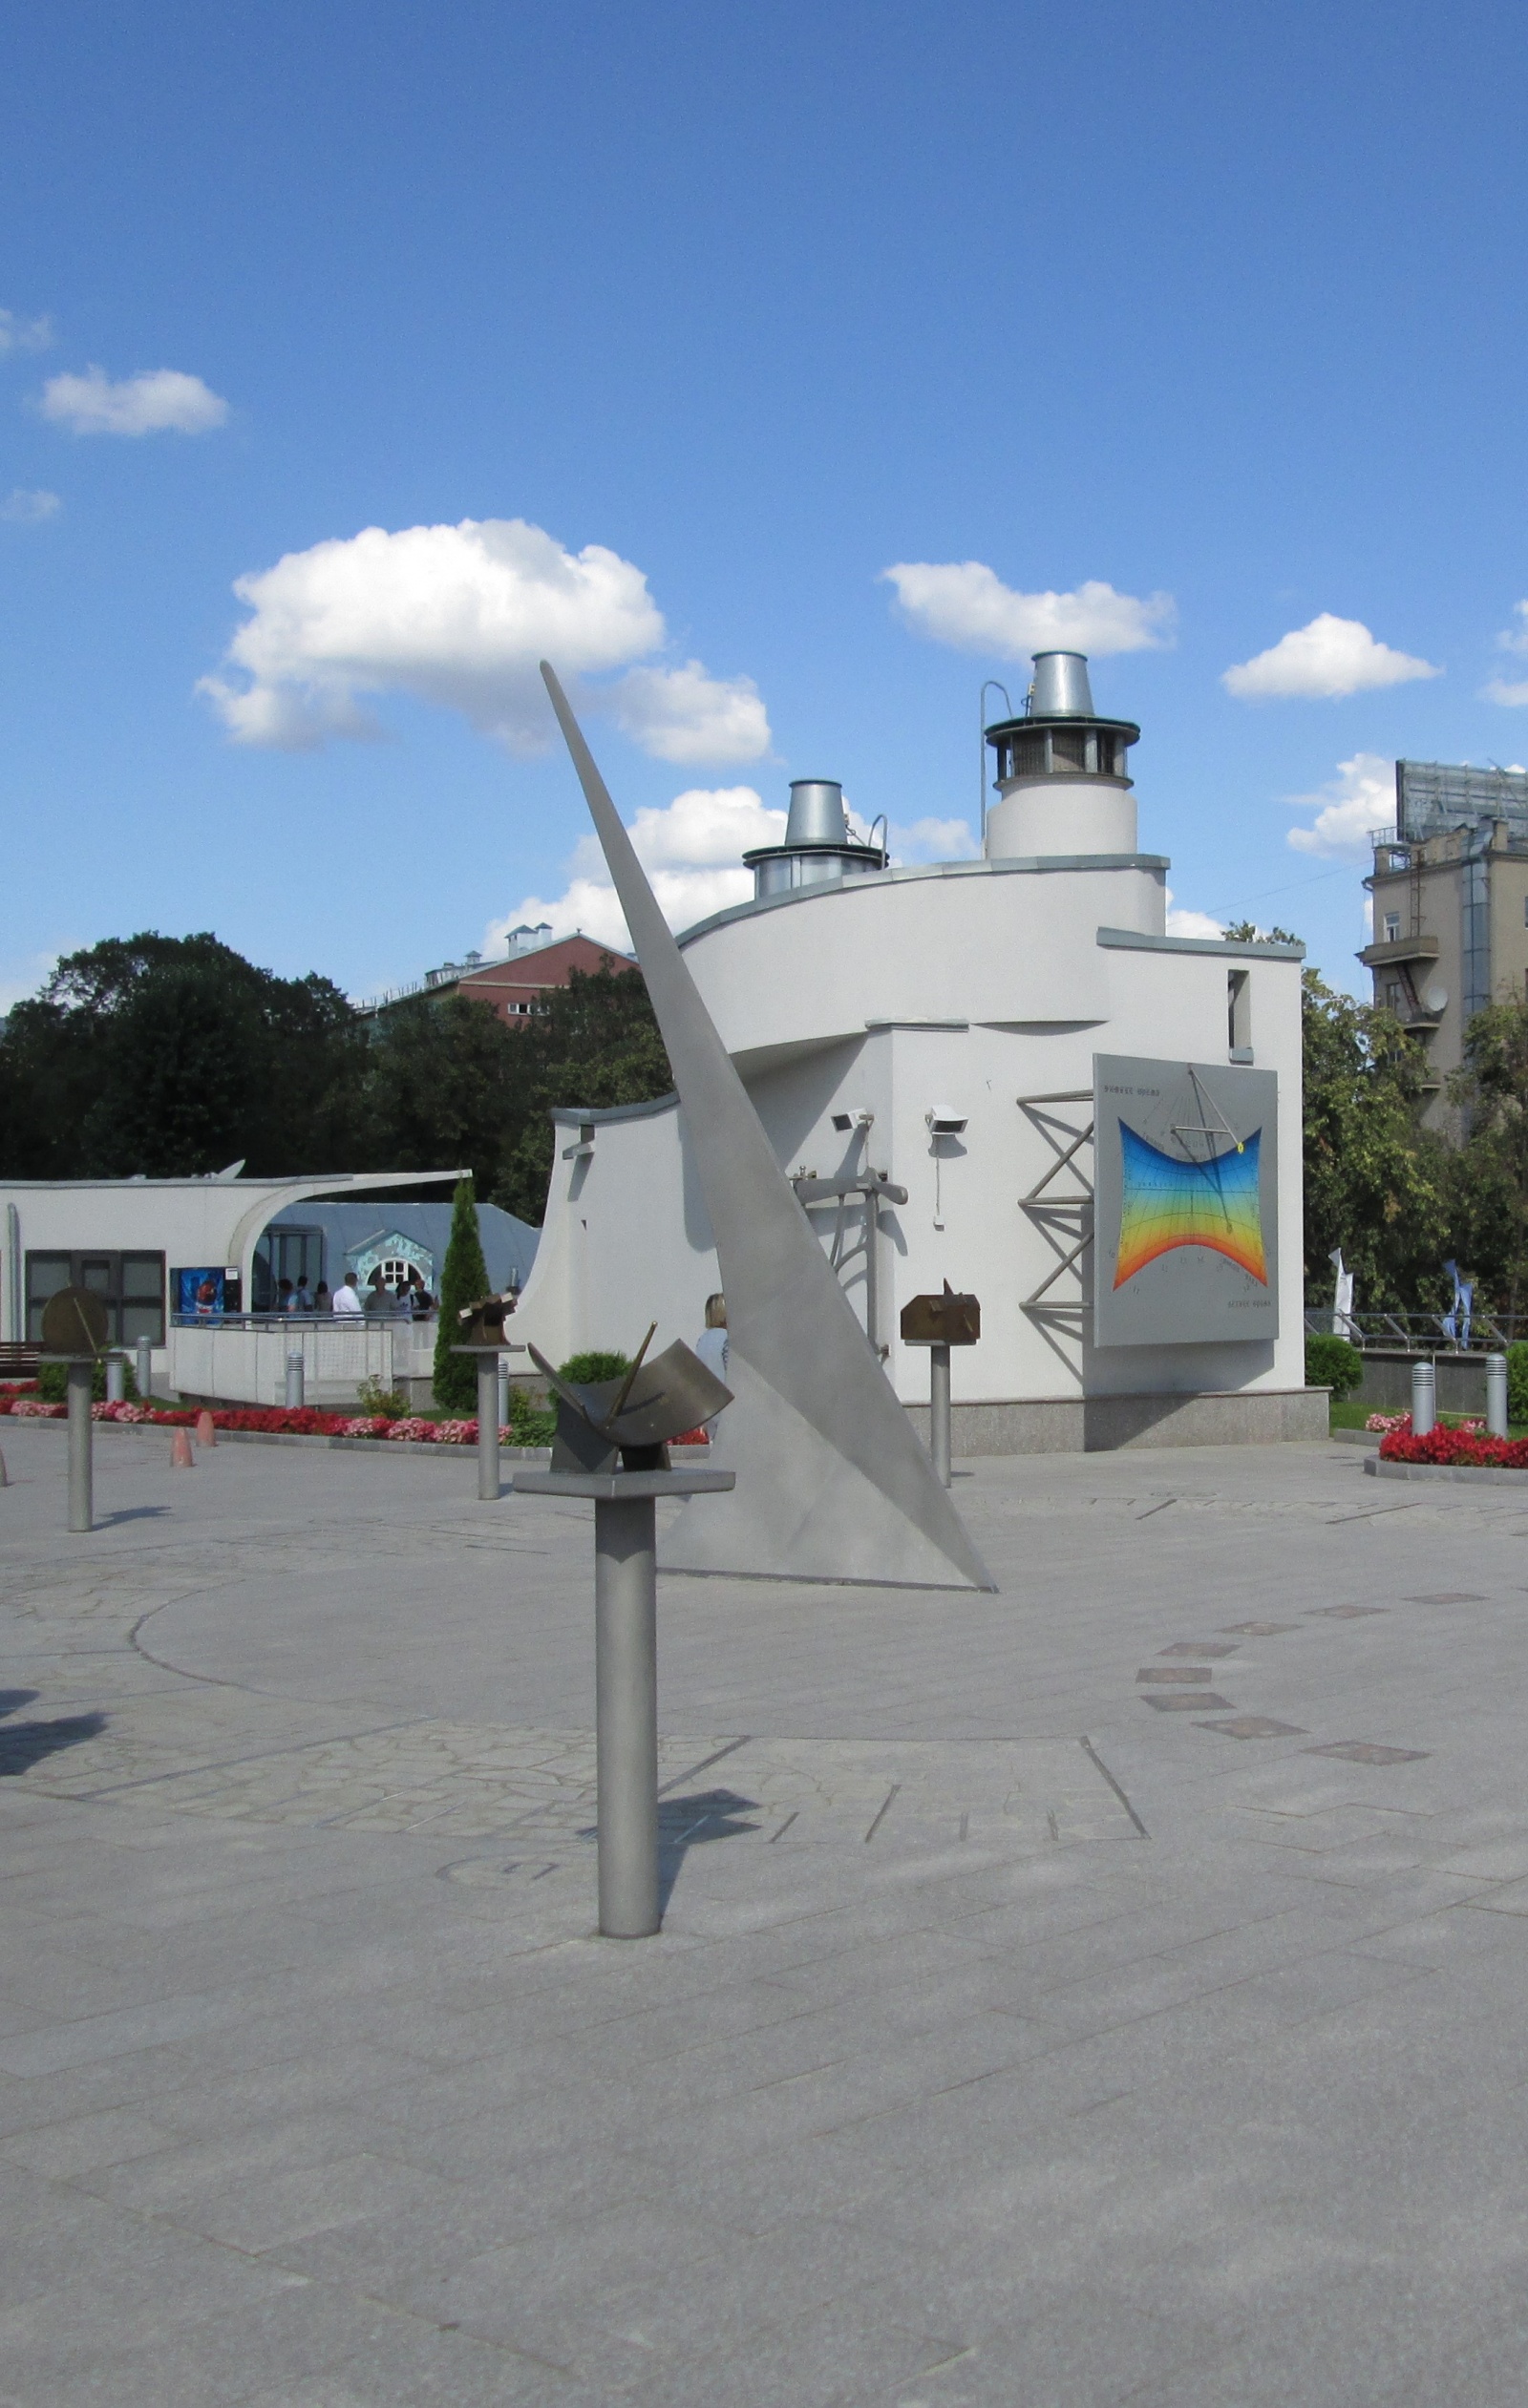  Часть коллекции солнечных часов, размещенная в парке неба Московского планетария. 2012 г. Фото автора.